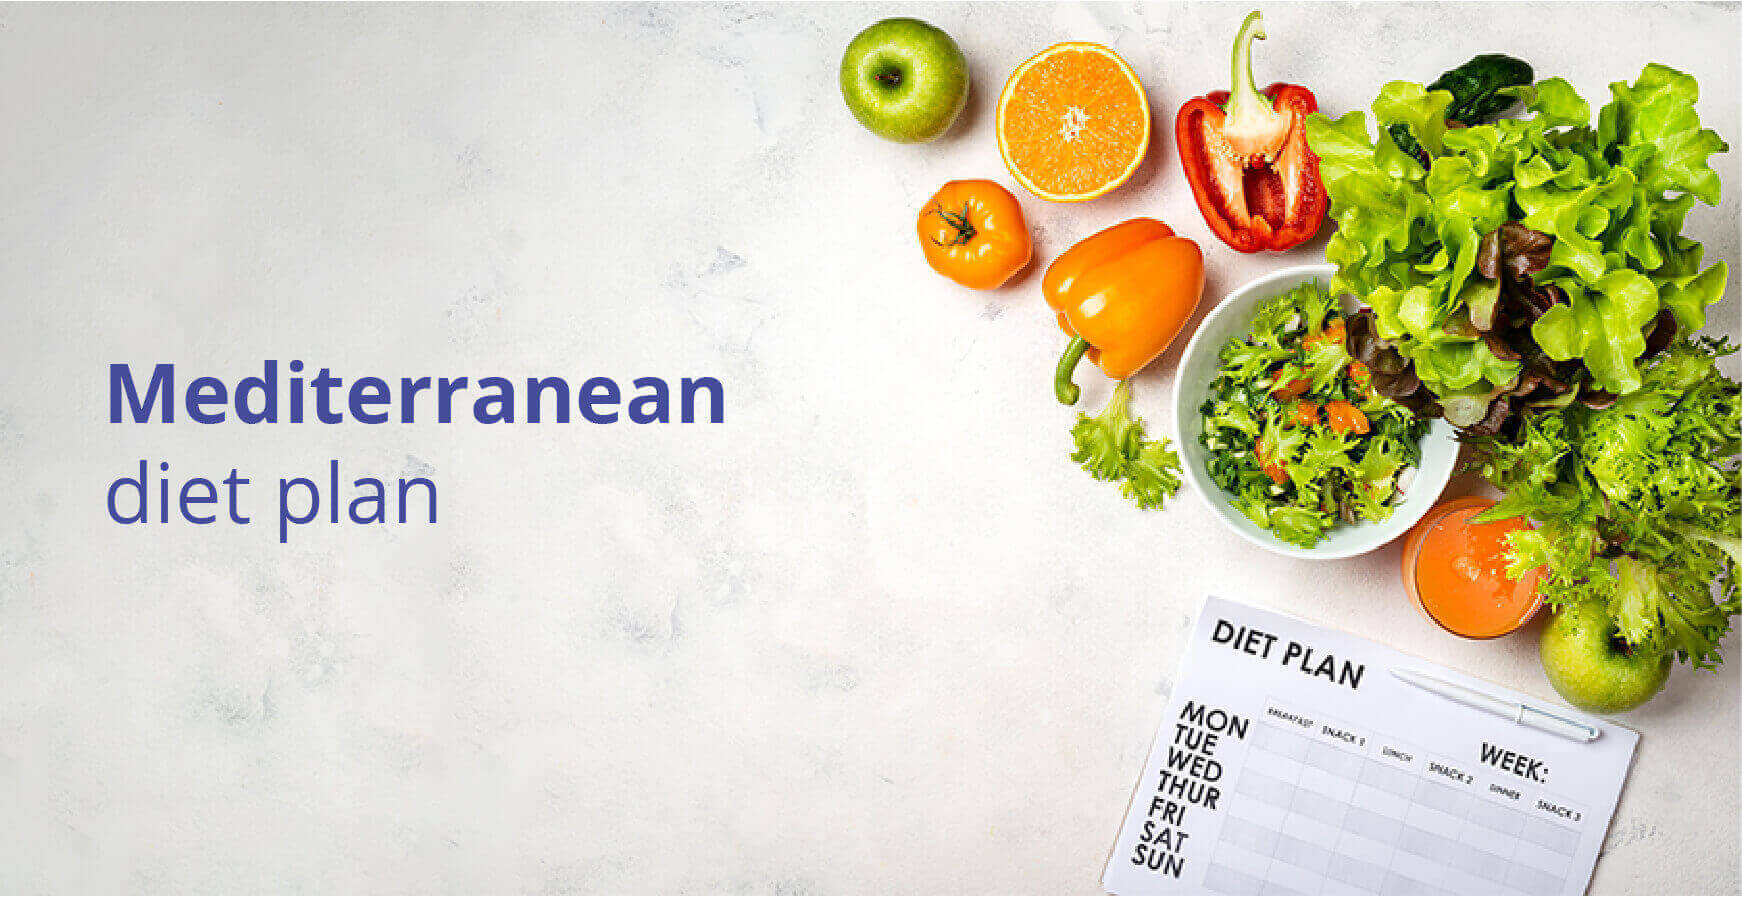 Why Mediterranean Diet plan is necessary